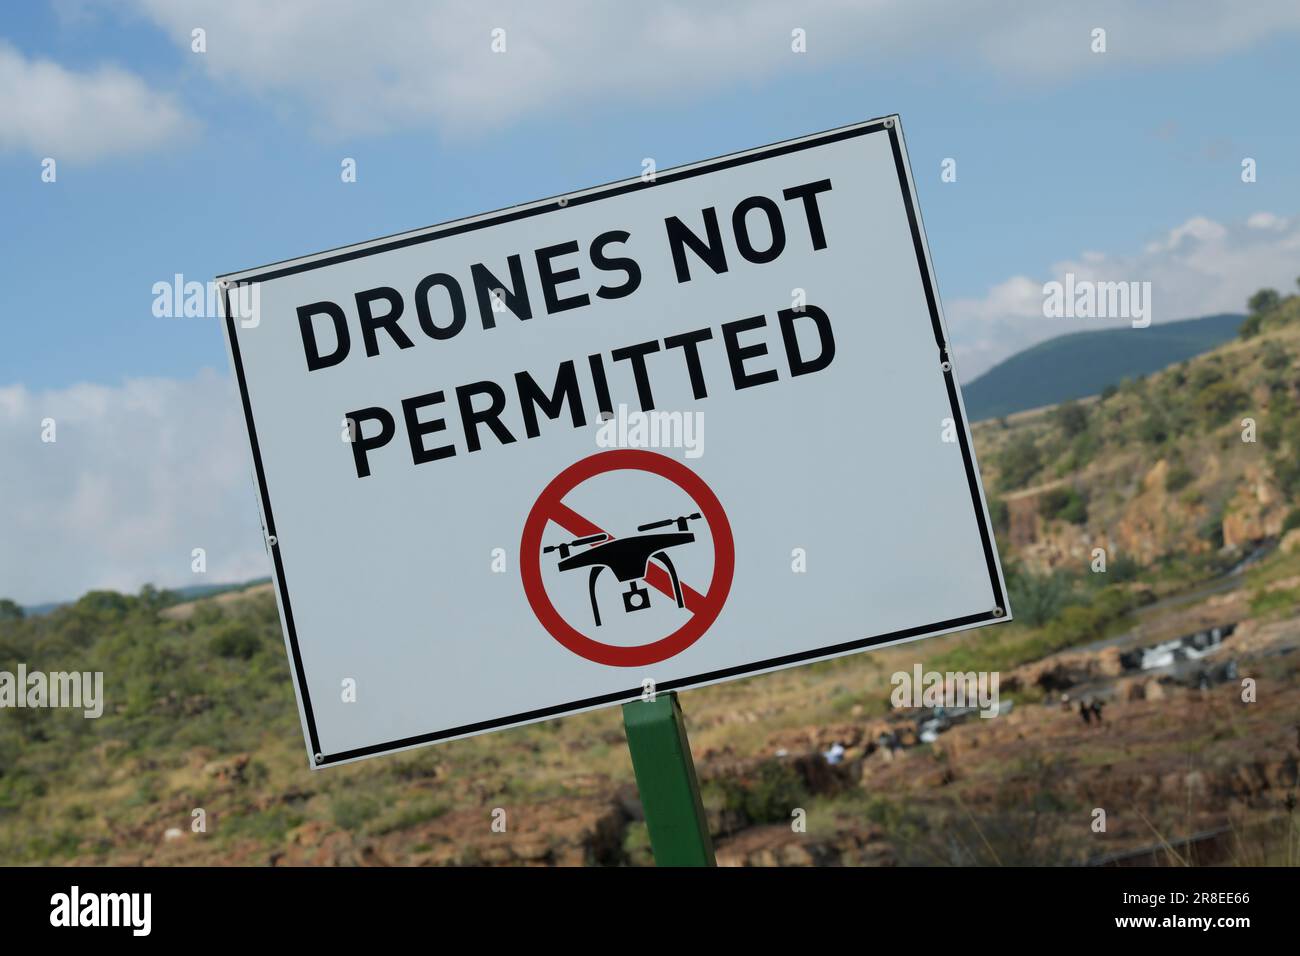 Avviso di divieto di volo di droni nel parco naturale, non sono ammessi aeromobili senza equipaggio, Graskop, Sudafrica, nessun utilizzo illegale di droni, dispositivo grafico Foto Stock